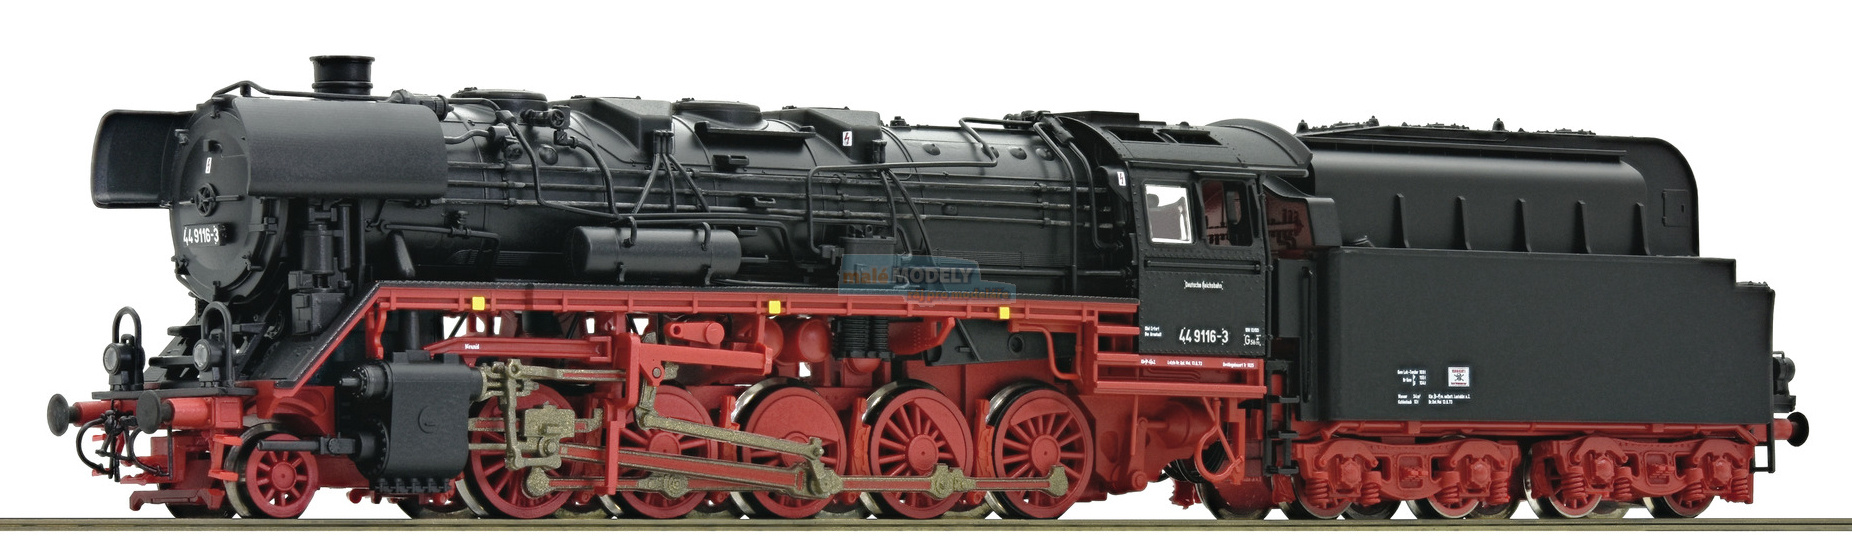 Parní lokomotiva BR 44 9116 s tendrem na uhelný prach